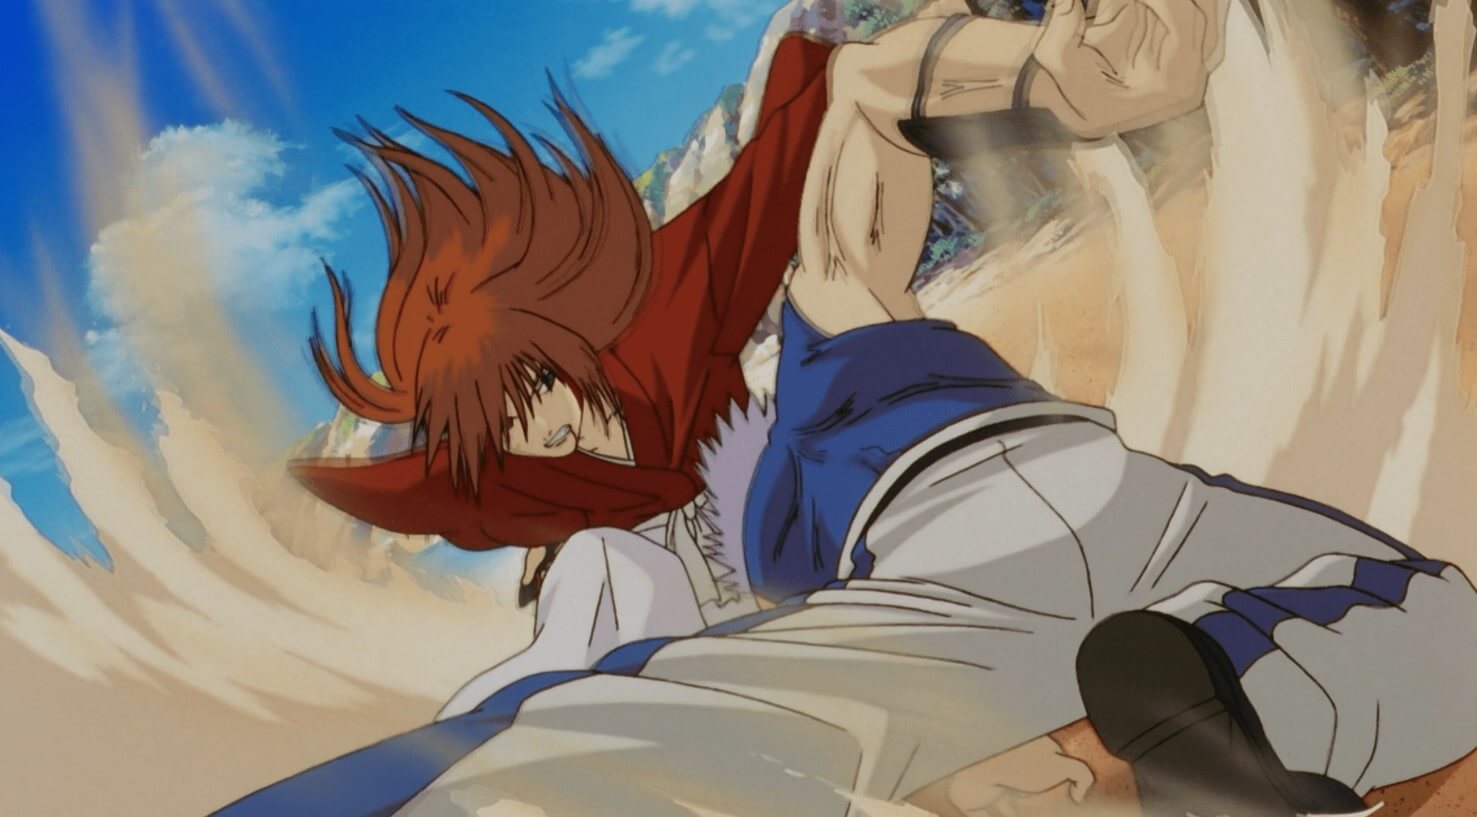 Kiếm thuật Hiten Mitsurugi ghê gớm của Kenshin đối với Enishi Yukishiro